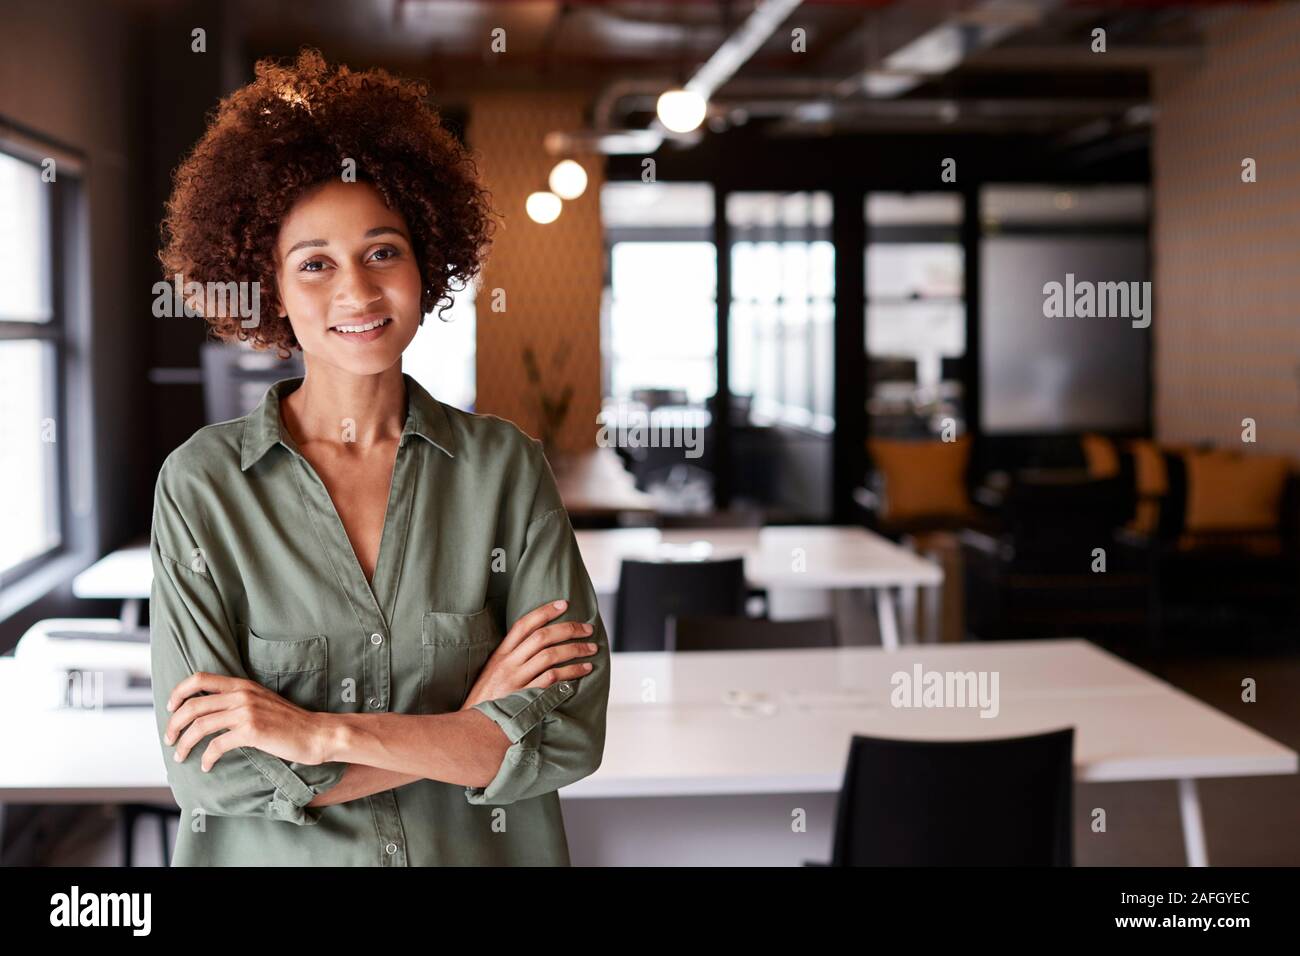 Femelle noire millénaire creative debout dans un bureau en espace ouvert avec les bras croisés smiling to camera Banque D'Images